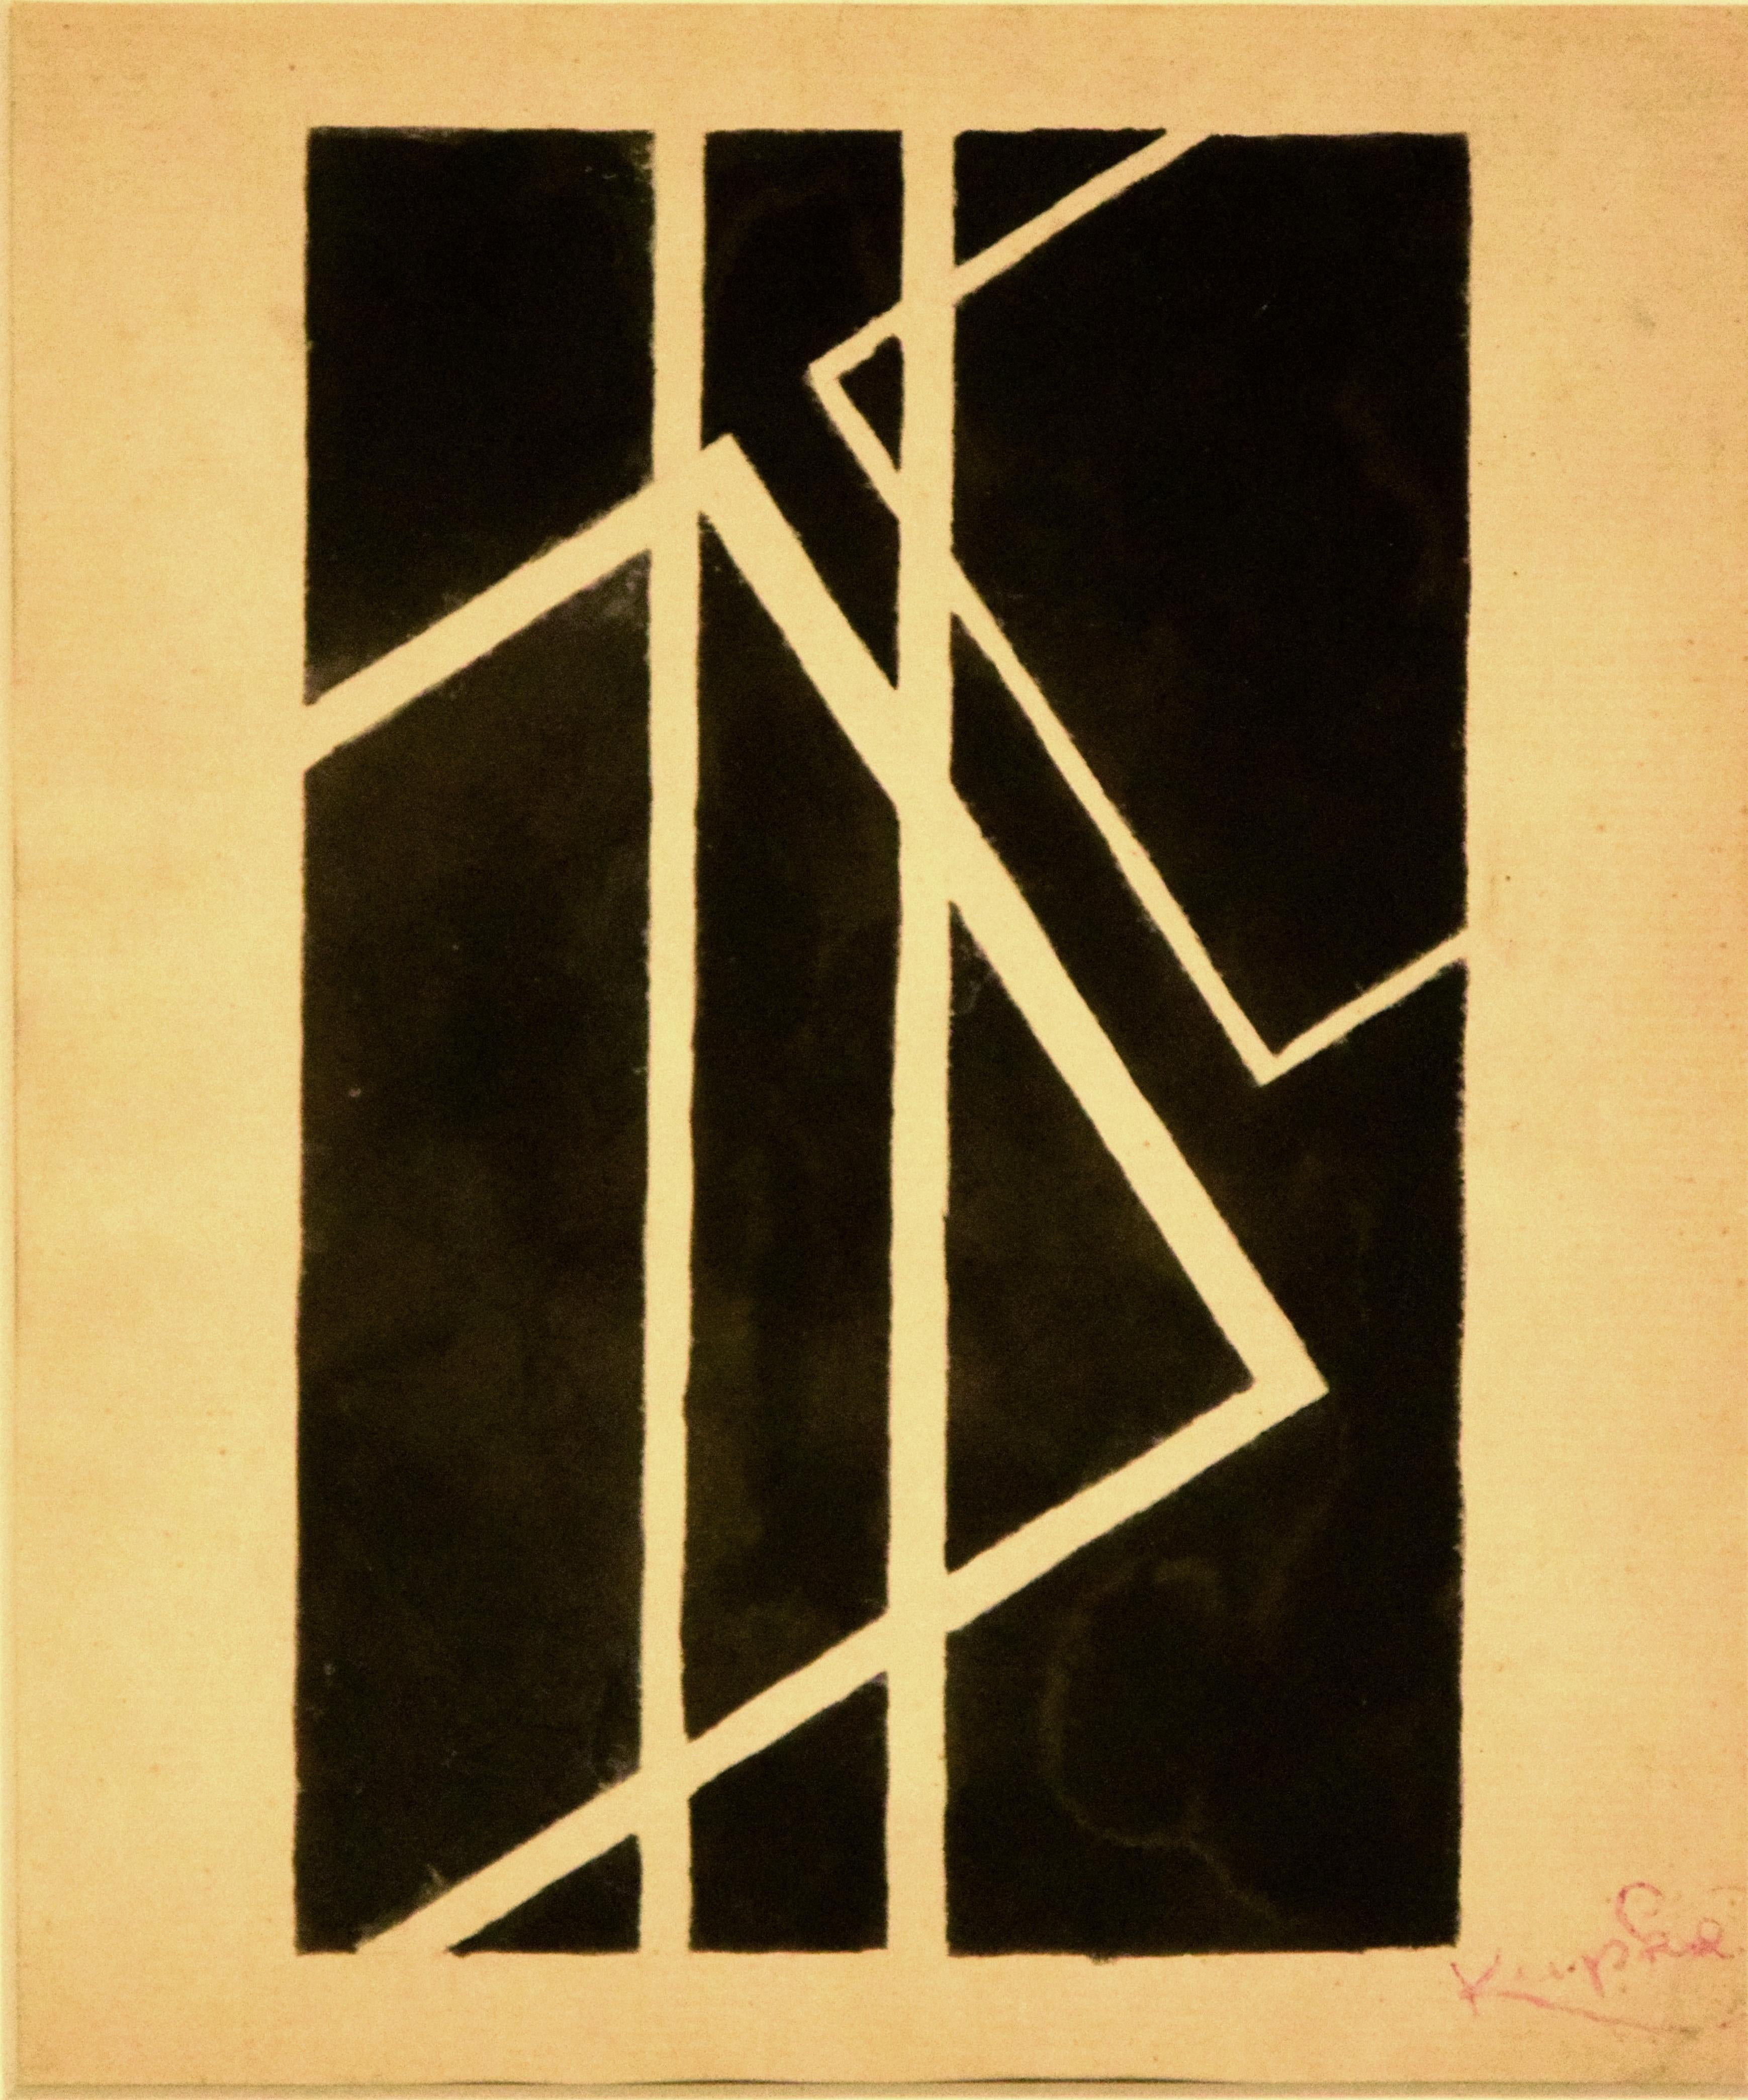 Schwarze geometrische Komposition – China-Tintezeichnung von F. Kupka  – Art von Frantisek Kupka